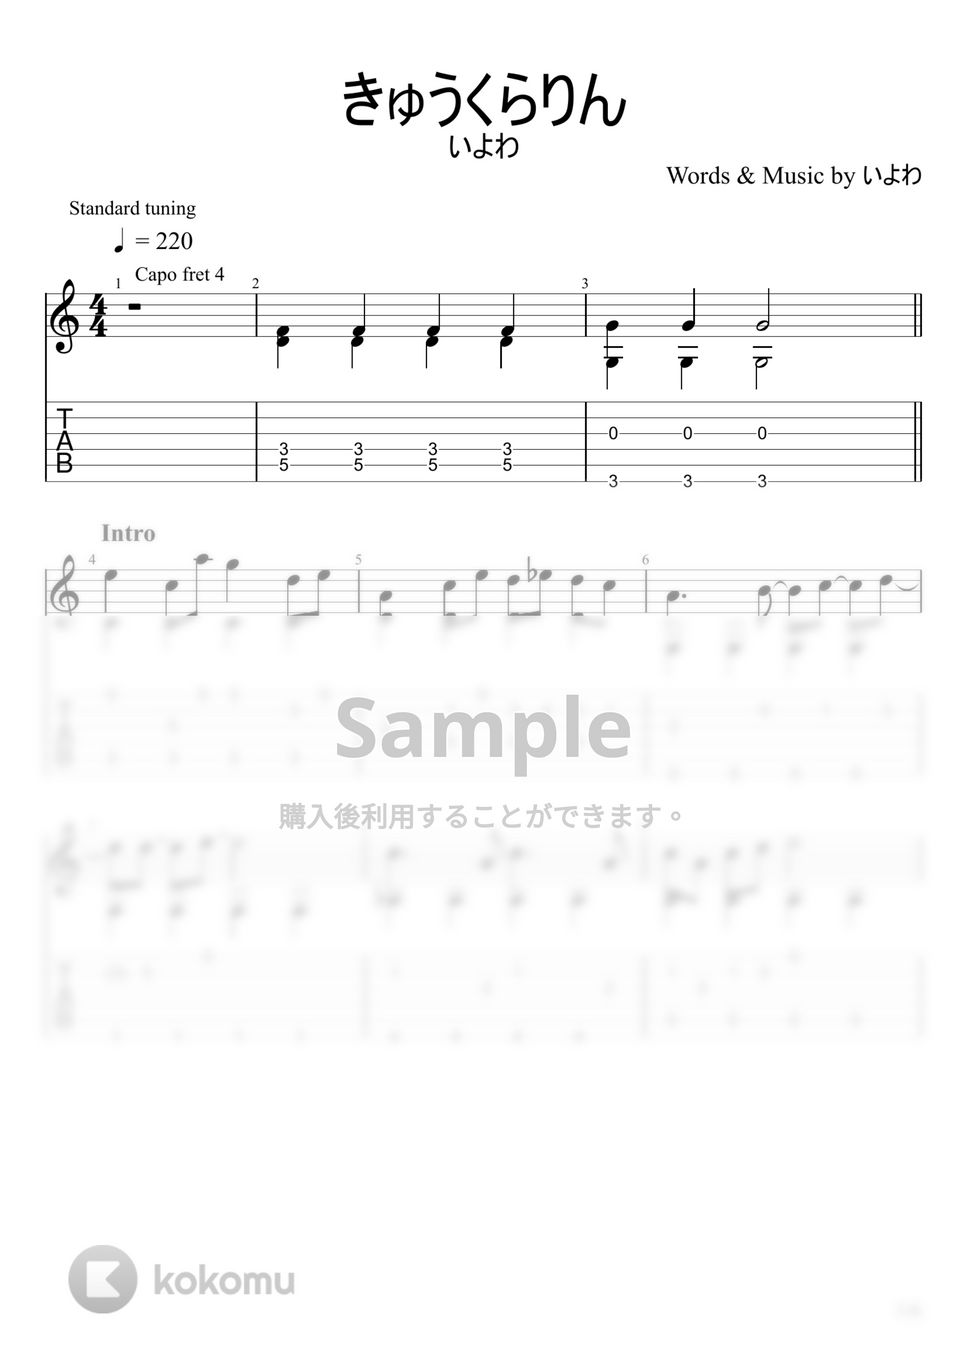 いよわ - きゅうくらりん (ソロギター) by u3danchou